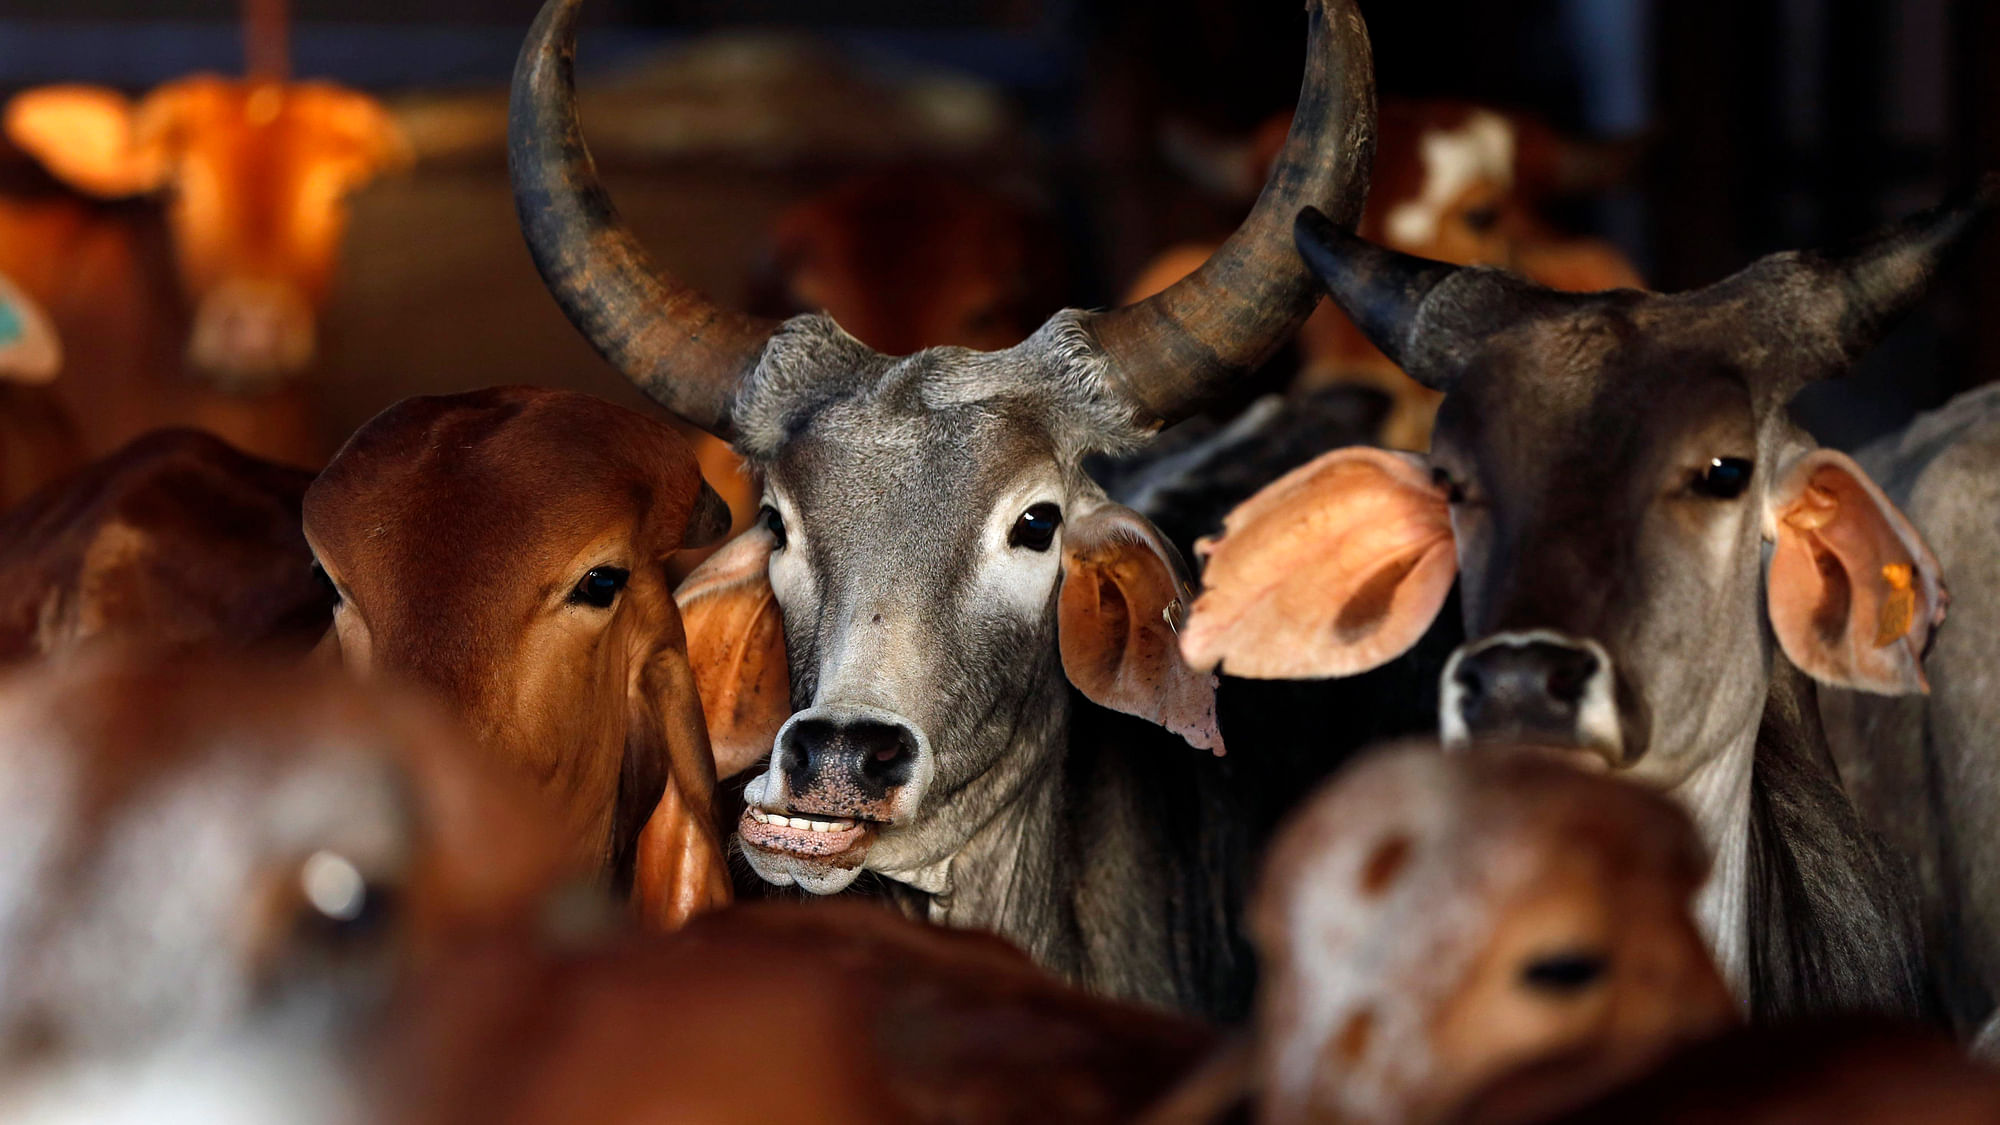 गाय को राष्ट्रमाता घोषित करने और गोमांस की बिक्री पर प्रतिबंध लगाये जाने की मांग को लेकर पहुंचे थे कार्यकर्ता. (फोटोः Reuters) 